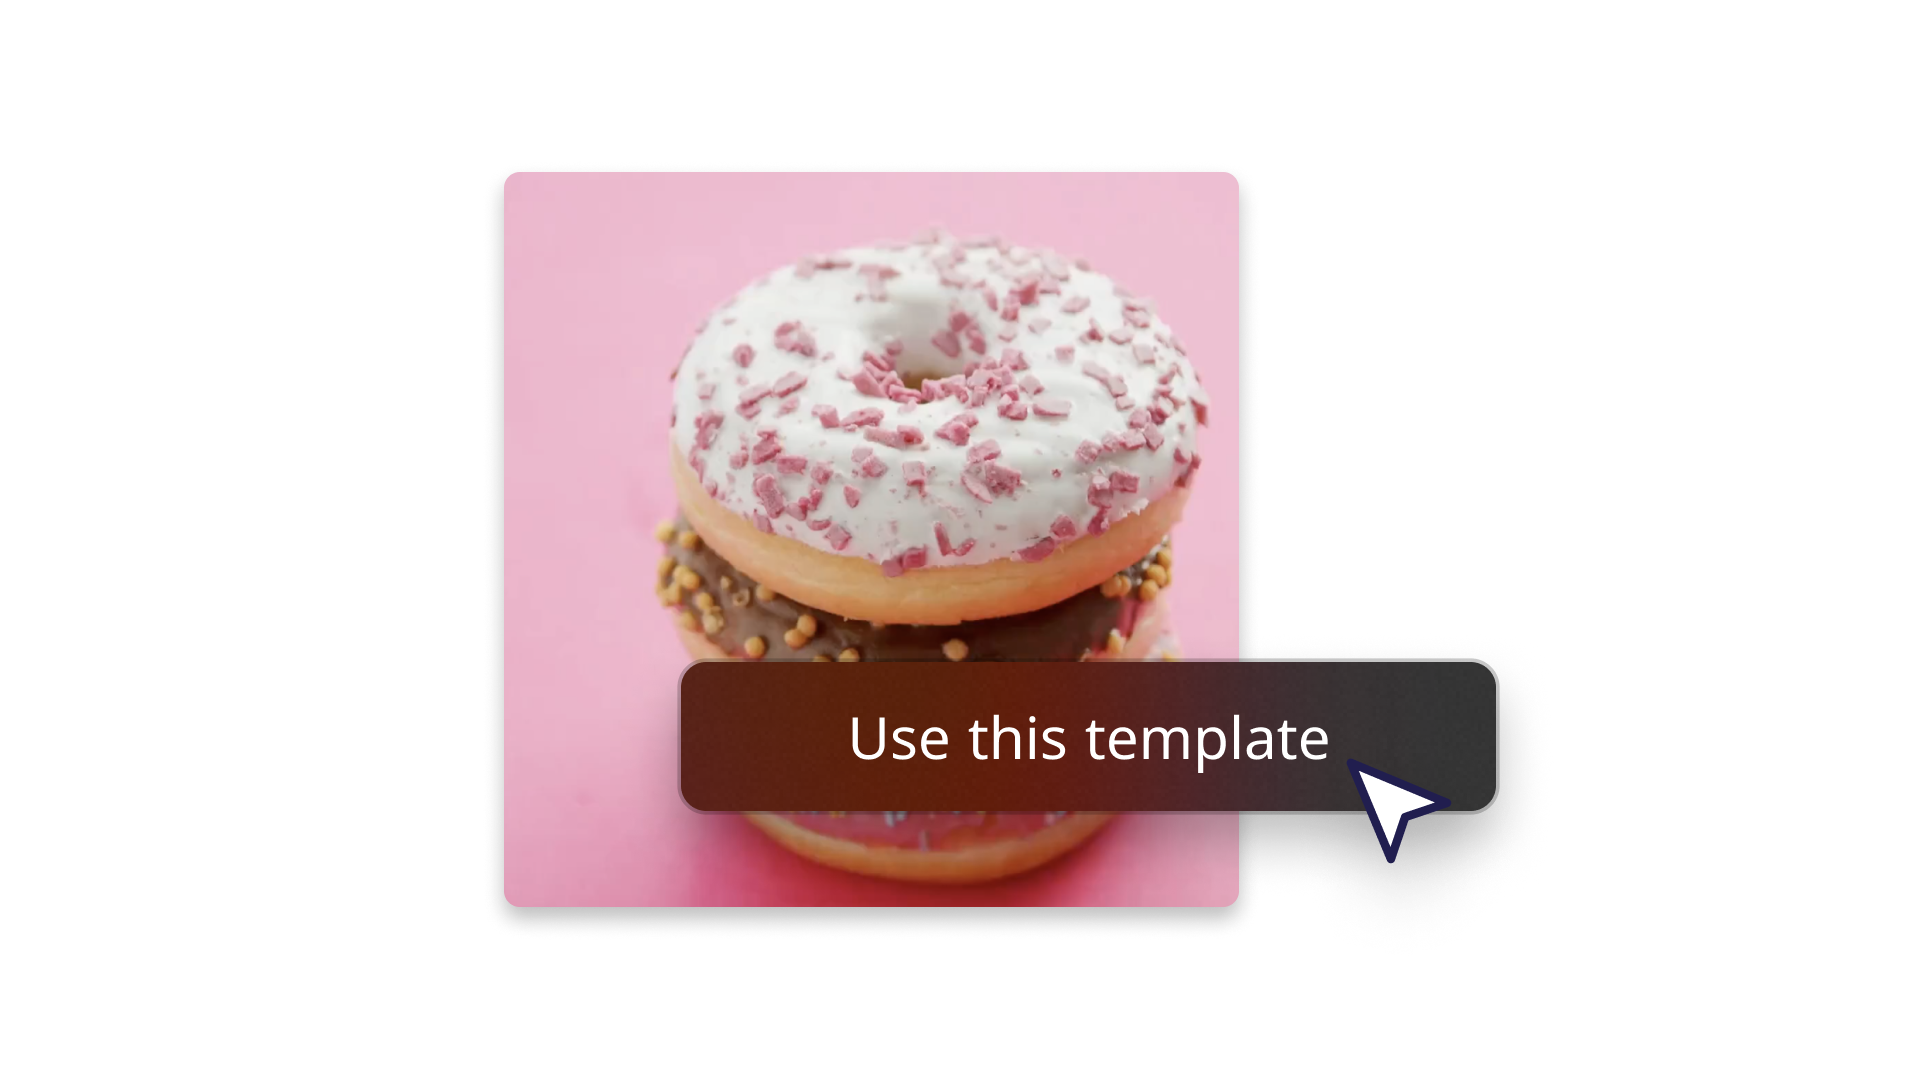 Abstraktes Bild mit einem Donut, das zeigt, wie man eine Vorlage verwendet 